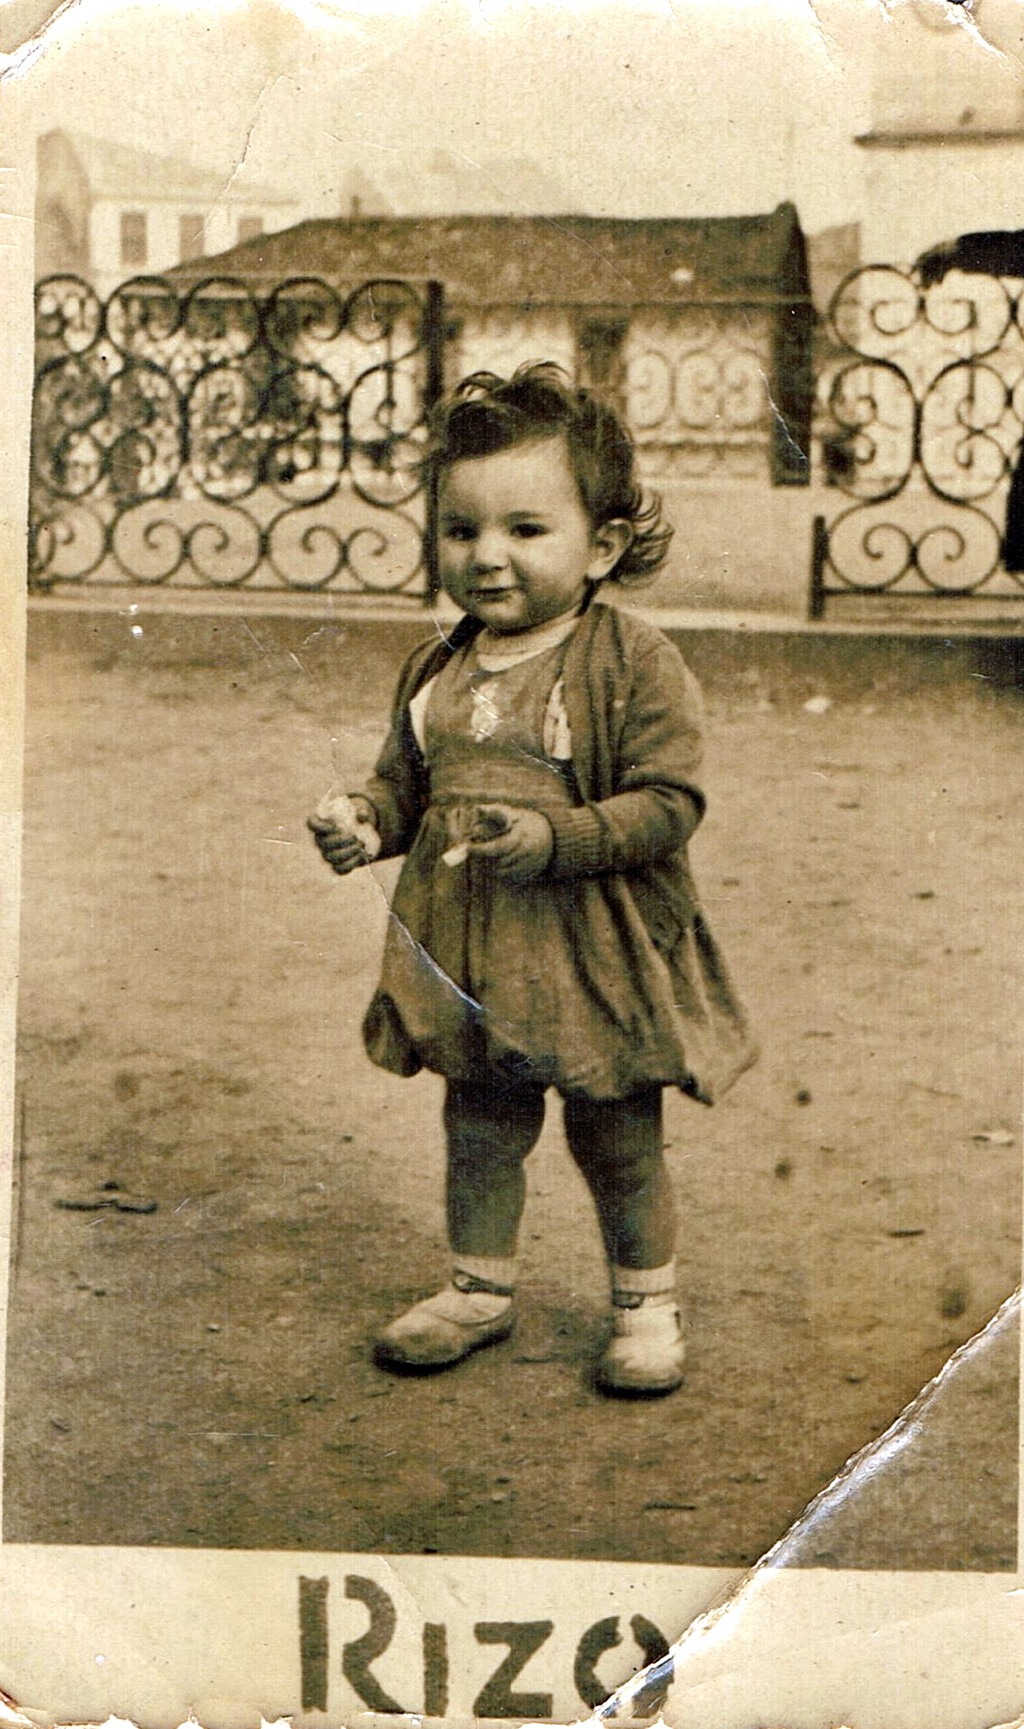 Ampliar: Aprendendo a andar na Praza maior, fins 1949